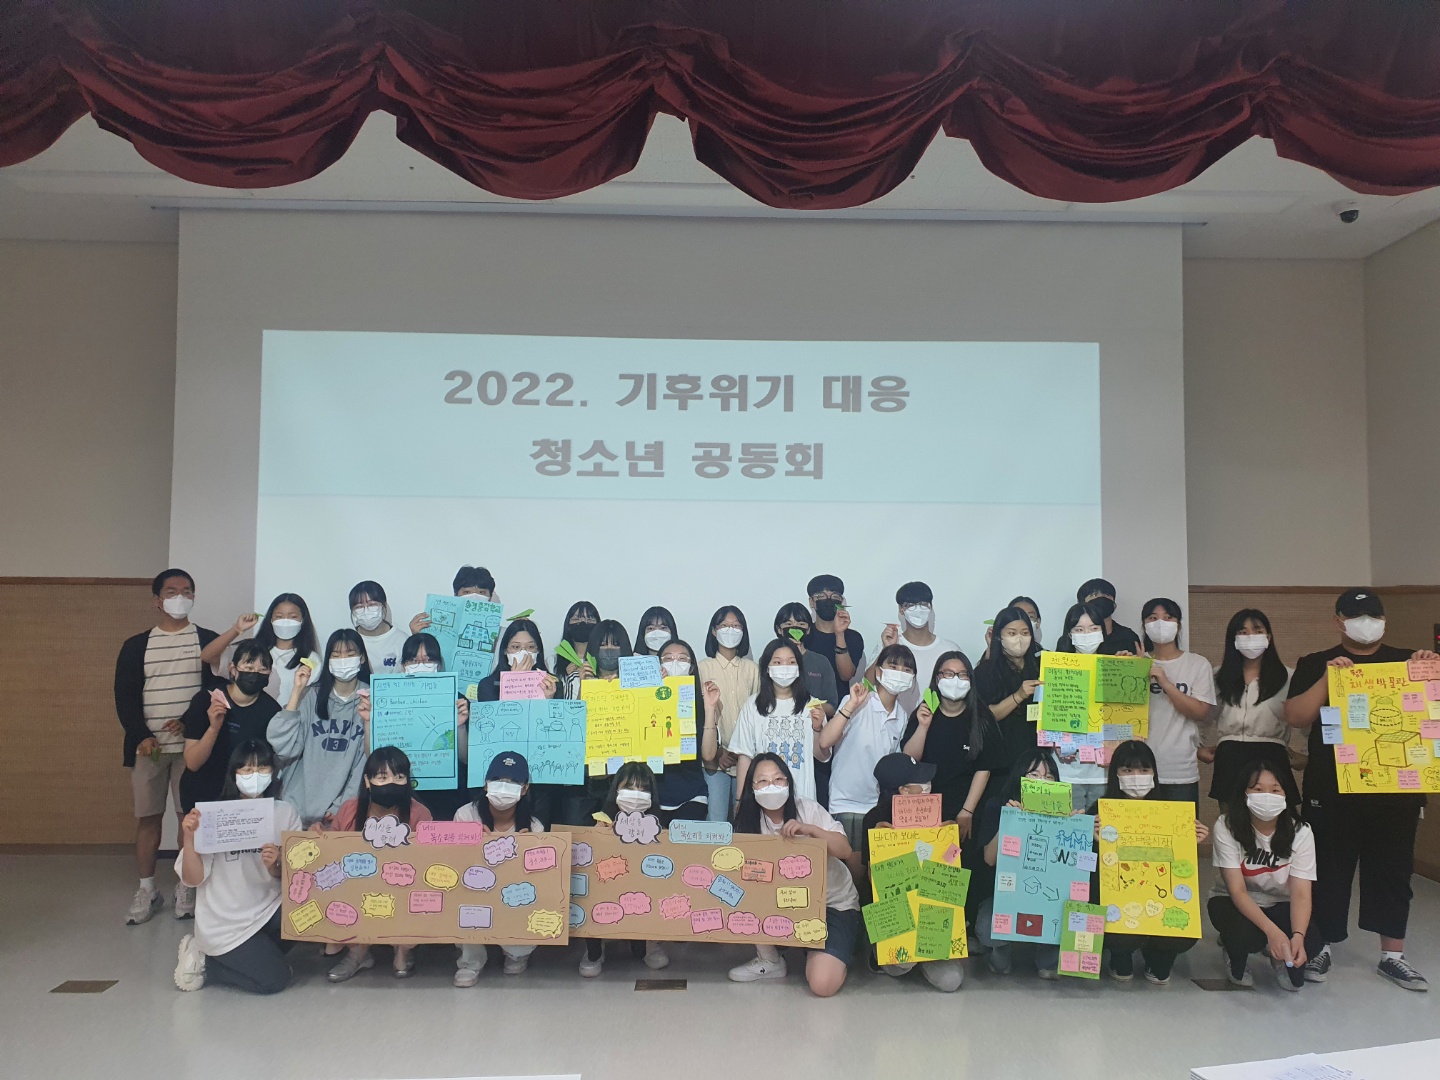 2022. 기후위기 대응 청소년 공동회 실시